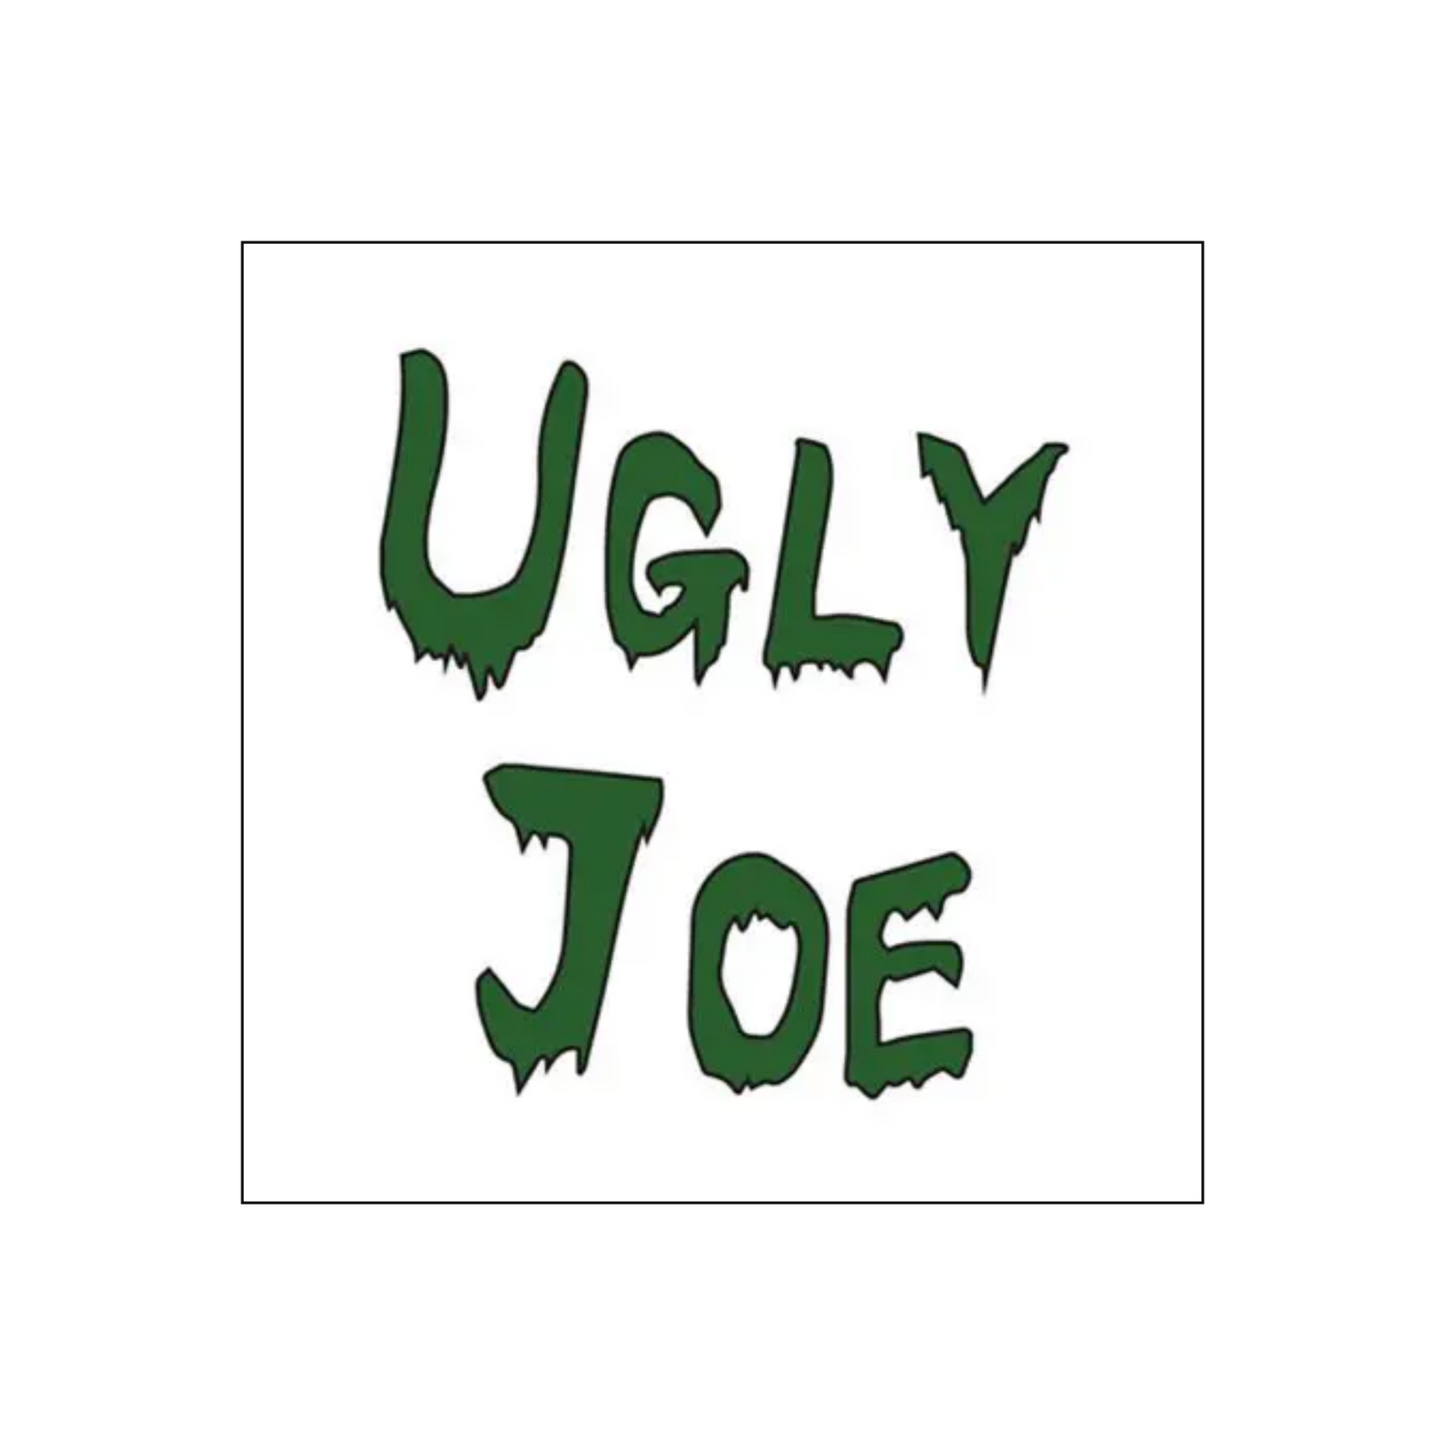 Ugly Joe